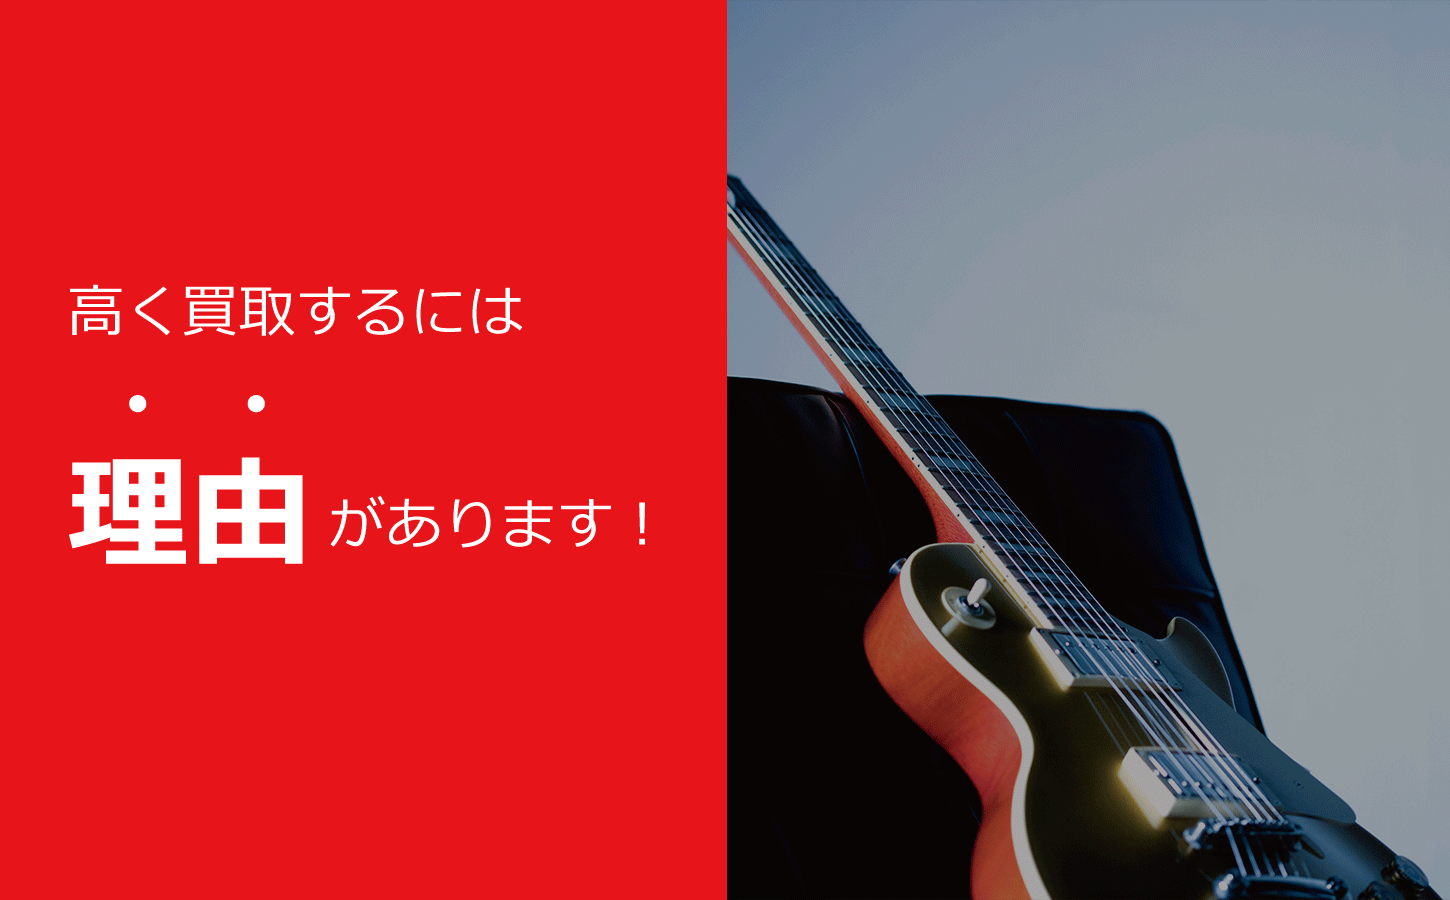 名古屋市・愛知県で楽器やオーディオを高額買取致します